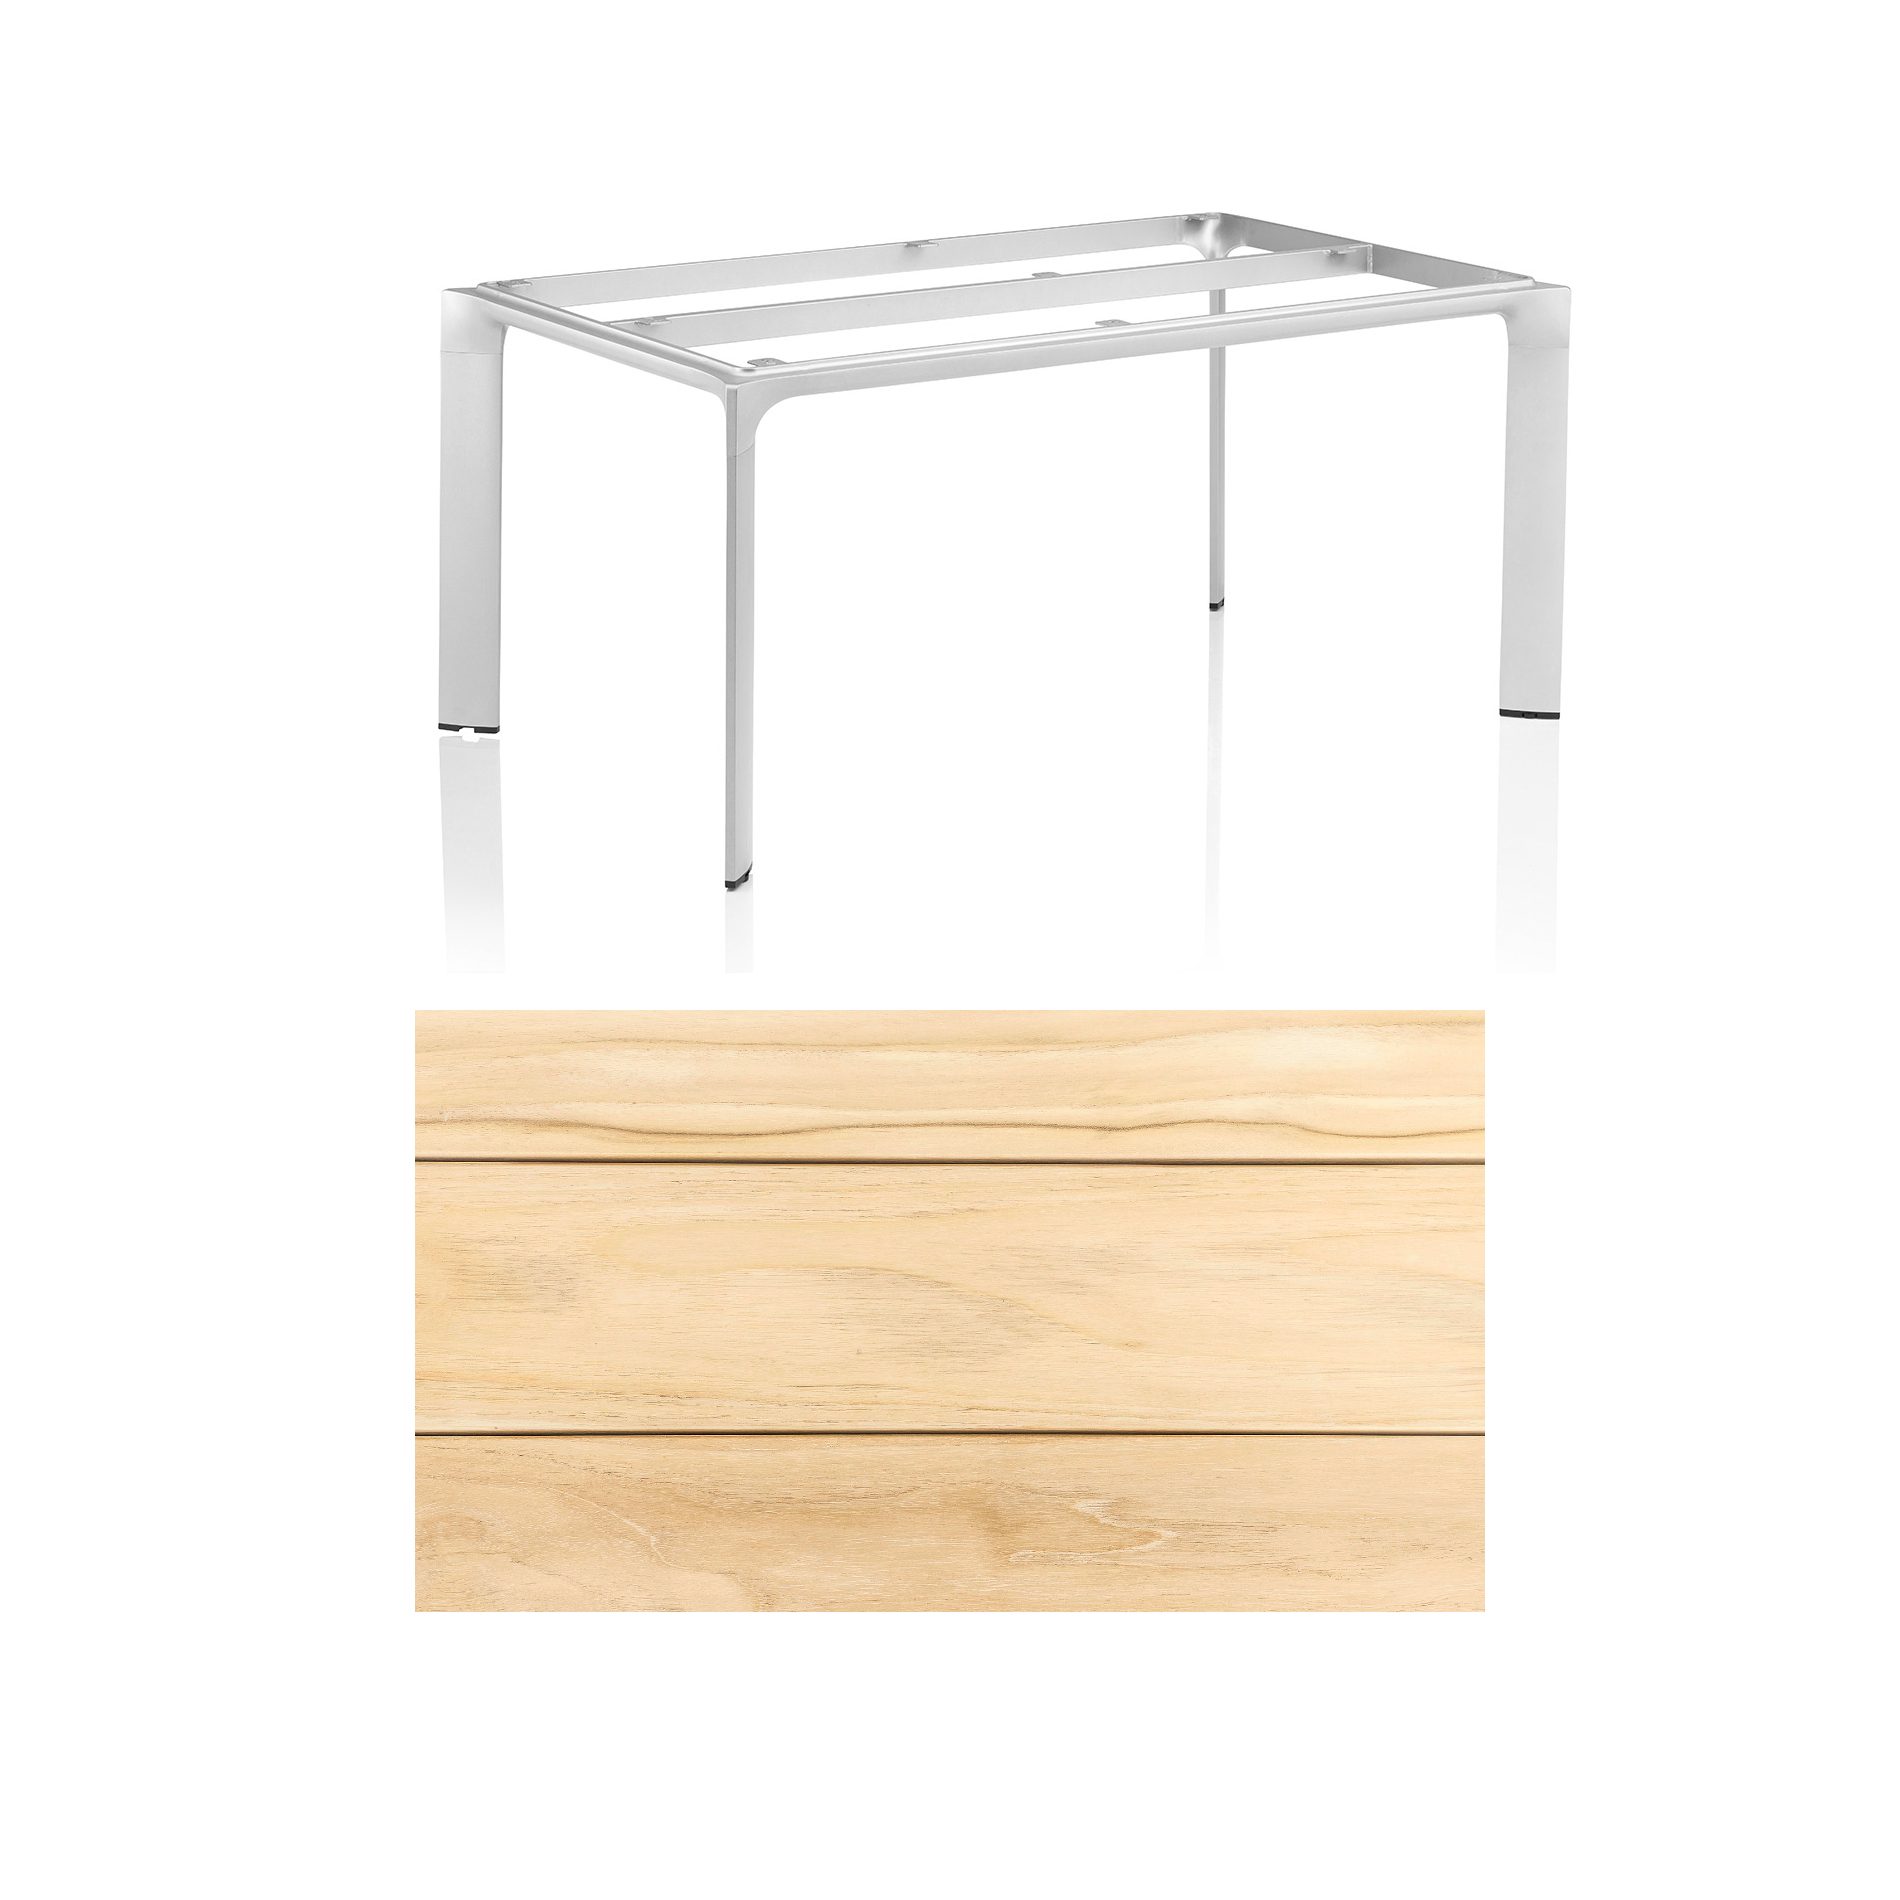 Kettler "Diamond" Tischsystem Gartentisch, Tischgestell Aluminium silber, Tischplatte Teakholz breite Leisten, 160x95 cm